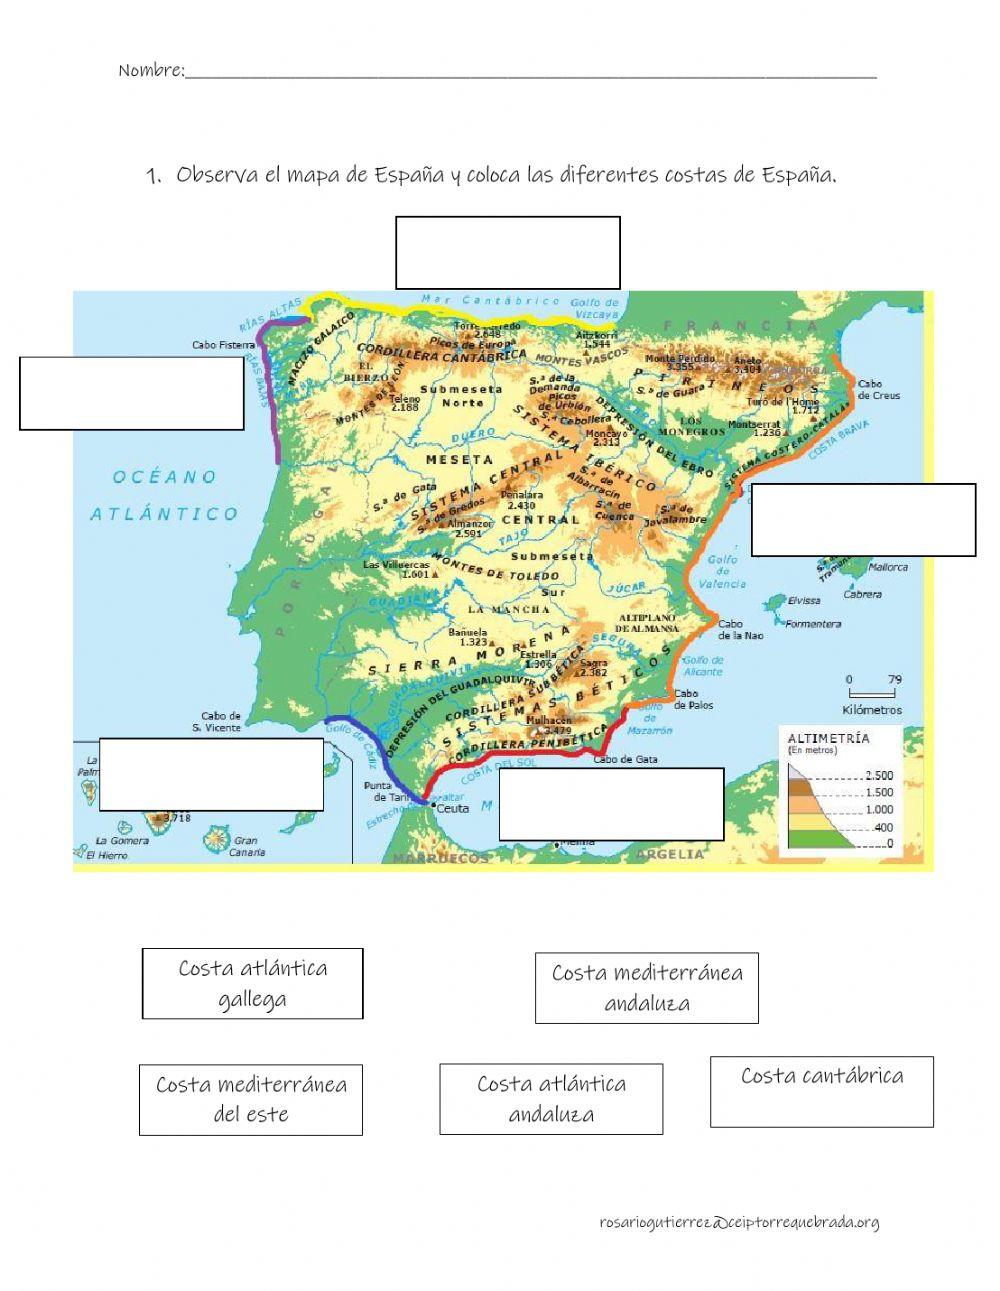 El relieve de España: las costas